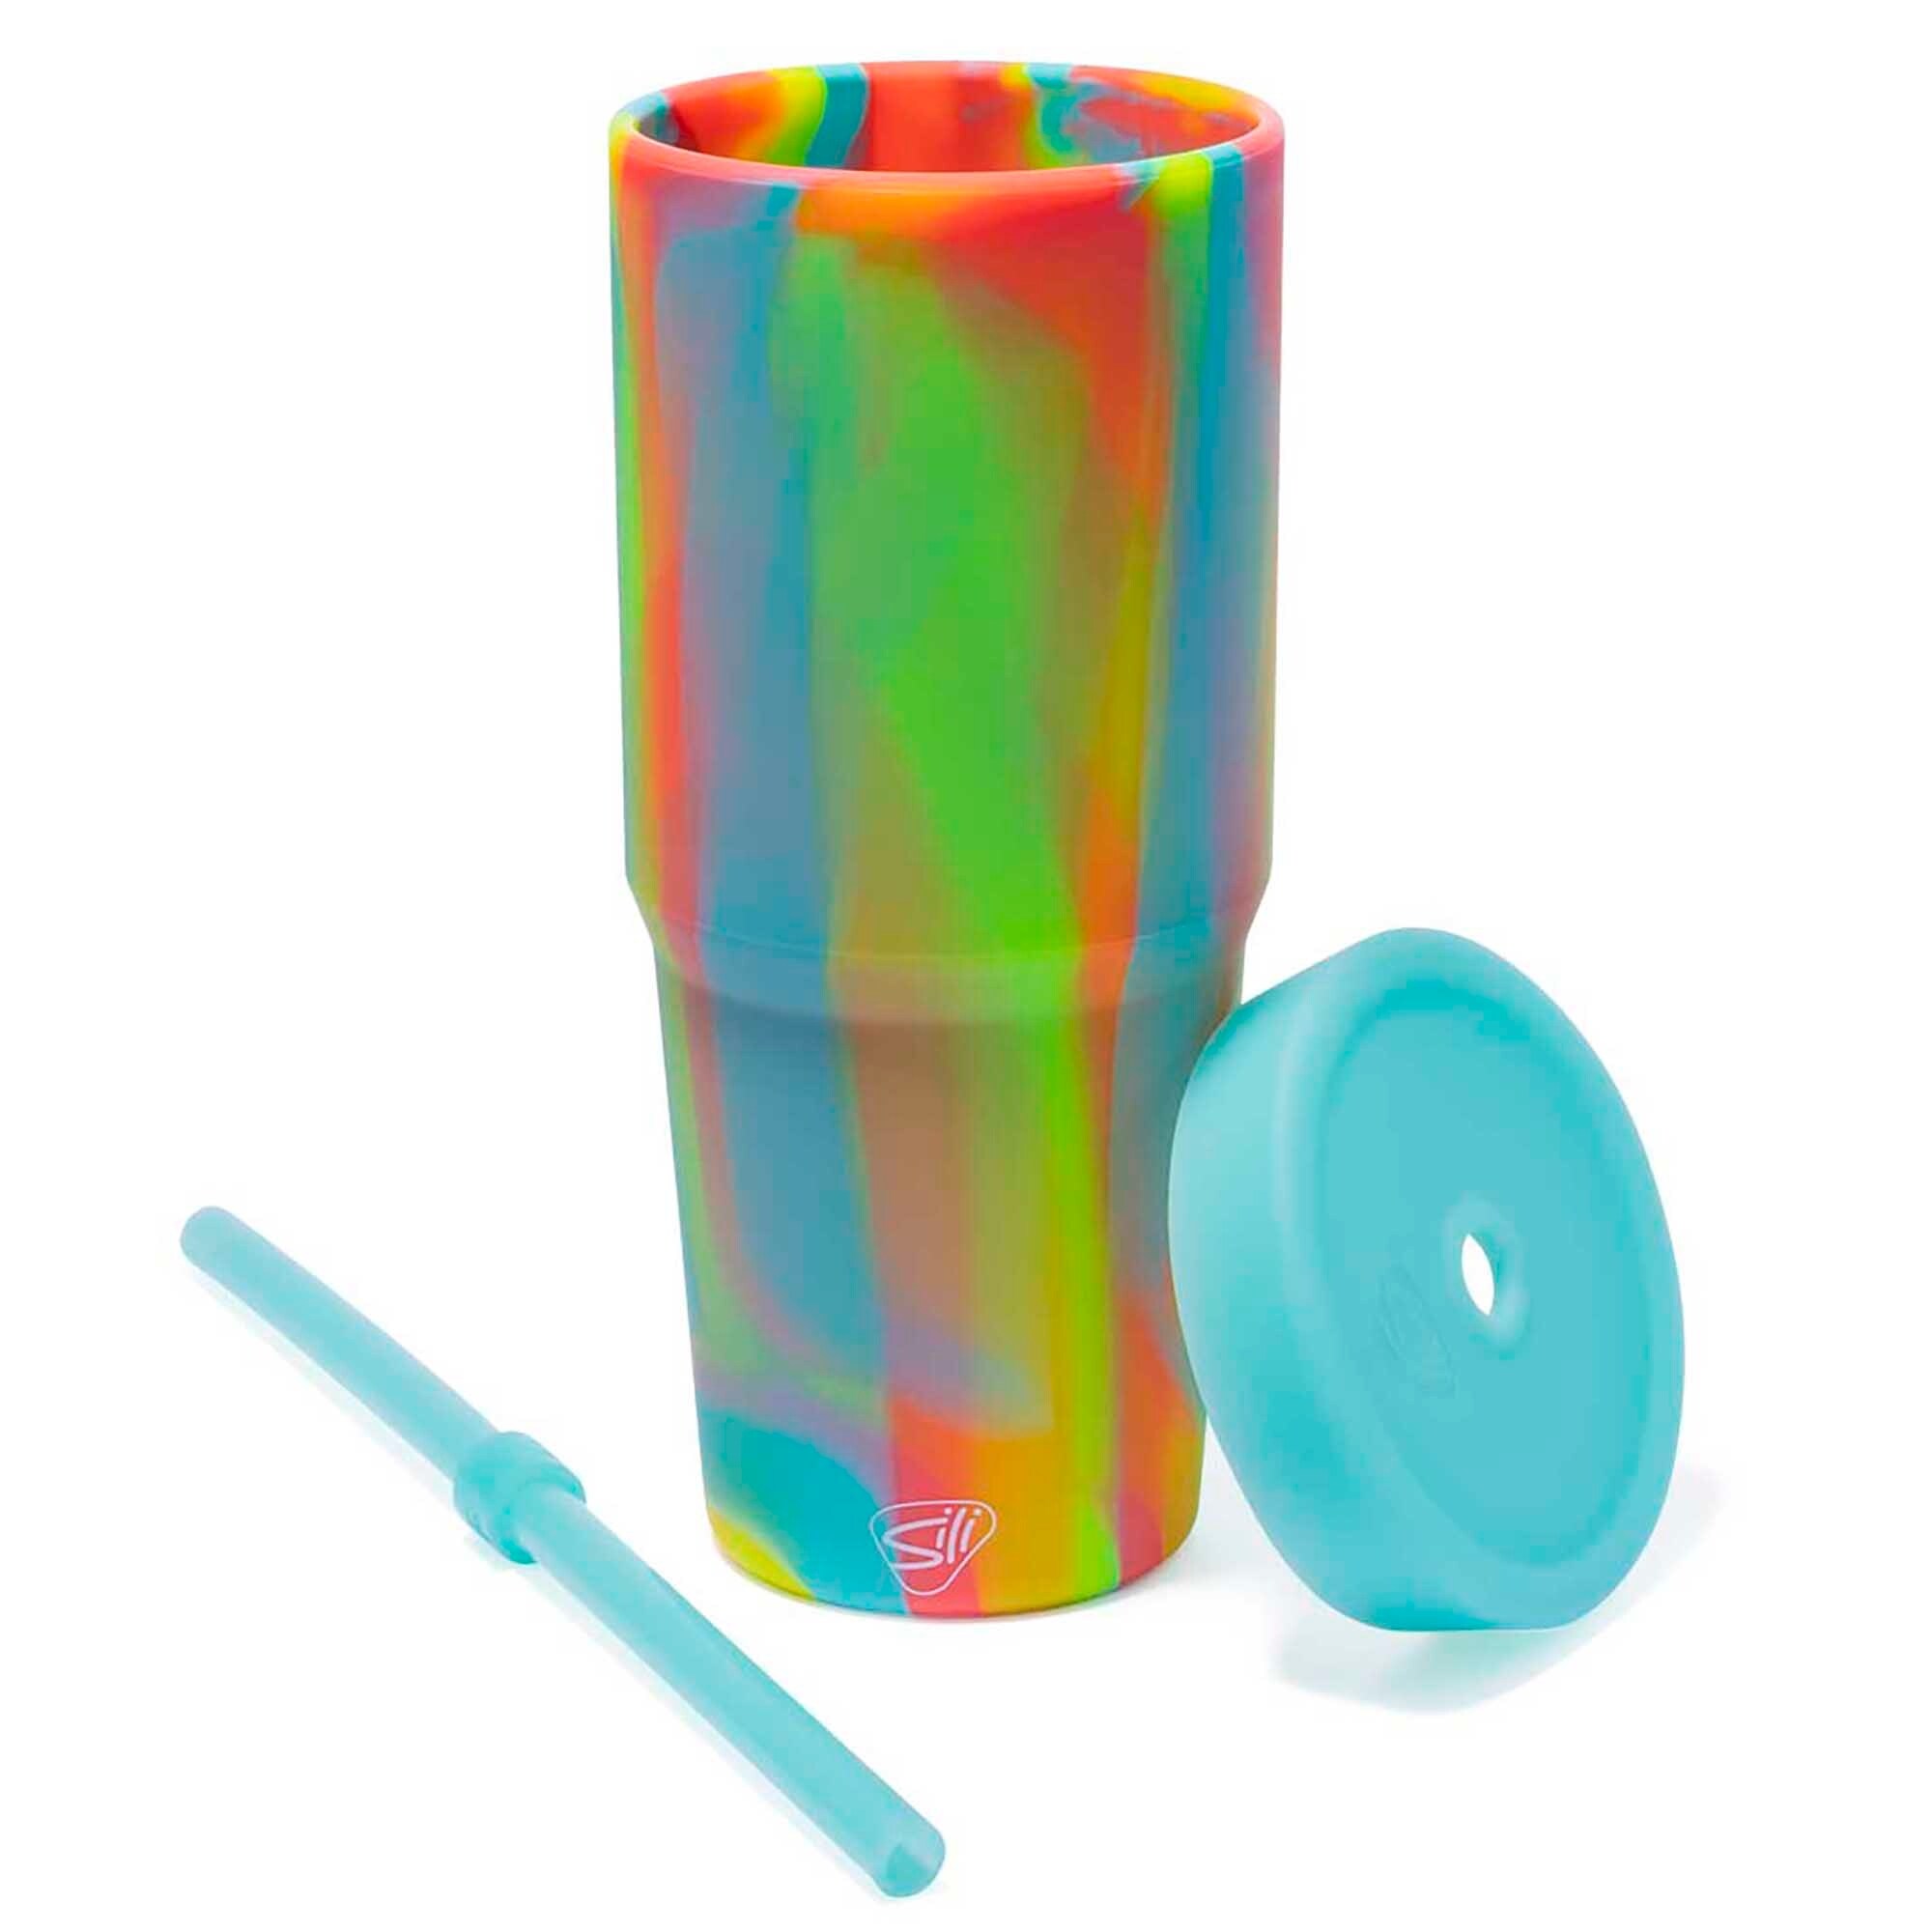 JoyJolt Glass Tumbler with 1 Straws & Non Slip Silicone Sleeve - 20 oz - Aqua